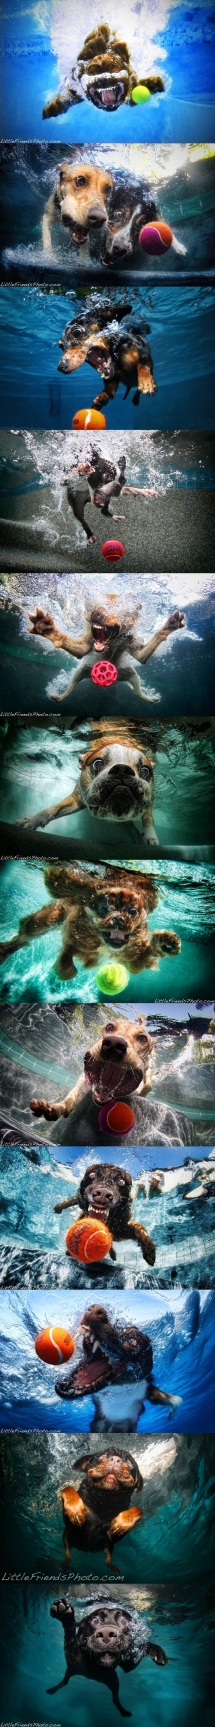 Underwater Dog Fun - Dog fun